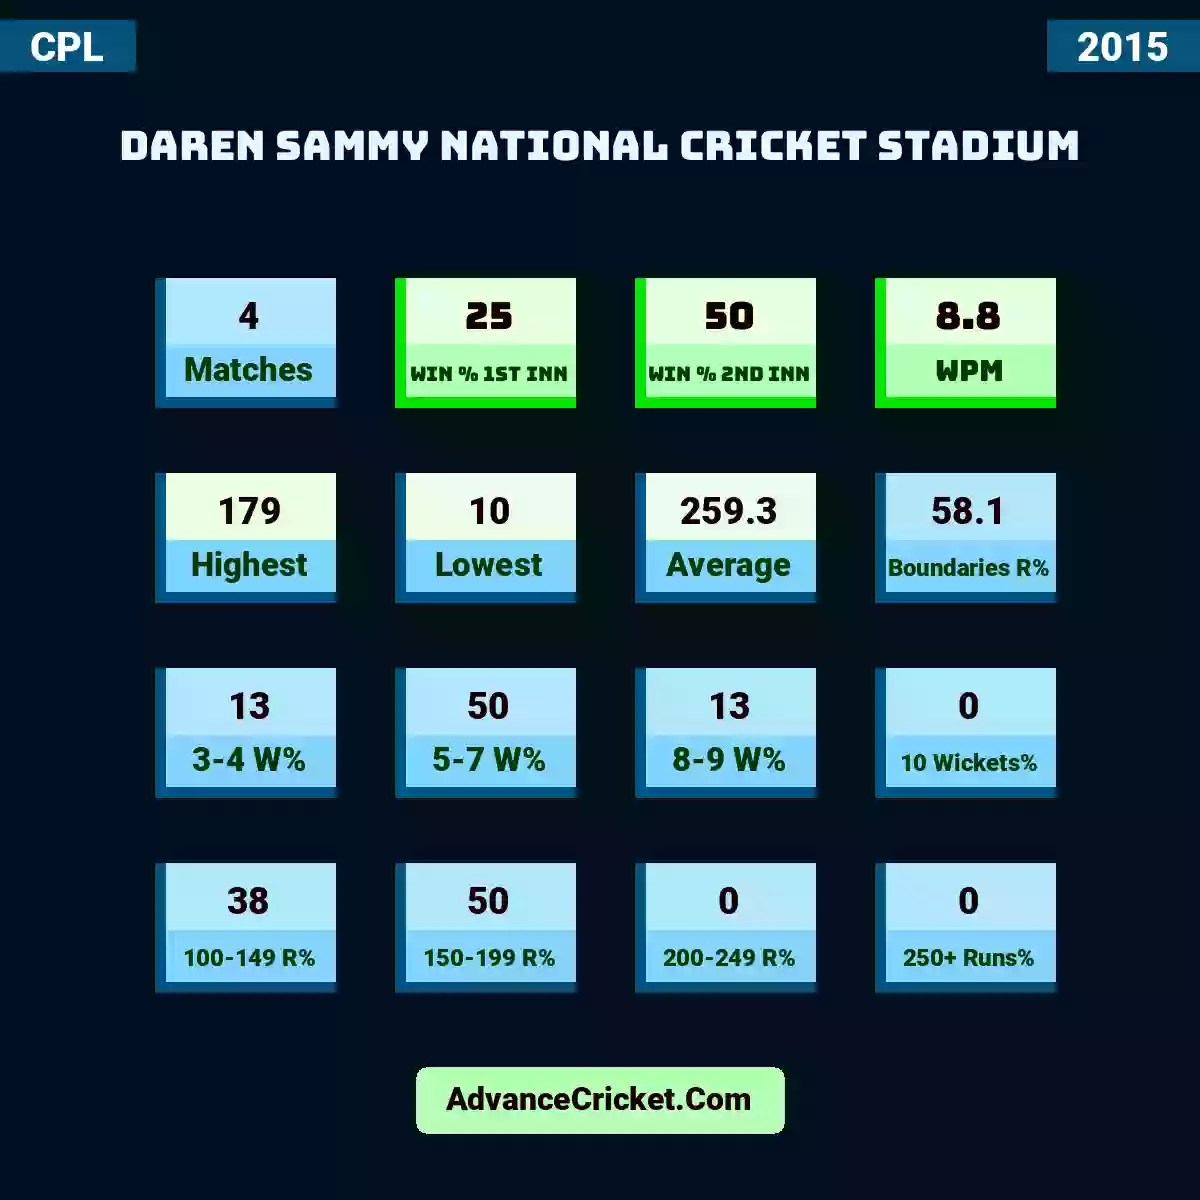 Image showing Daren Sammy National Cricket Stadium with Matches: 4, Win % 1st Inn: 25, Win % 2nd Inn: 50, WPM: 8.8, Highest: 179, Lowest: 10, Average: 259.3, Boundaries R%: 58.1, 3-4 W%: 13, 5-7 W%: 50, 8-9 W%: 13, 10 Wickets%: 0, 100-149 R%: 38, 150-199 R%: 50, 200-249 R%: 0, 250+ Runs%: 0.